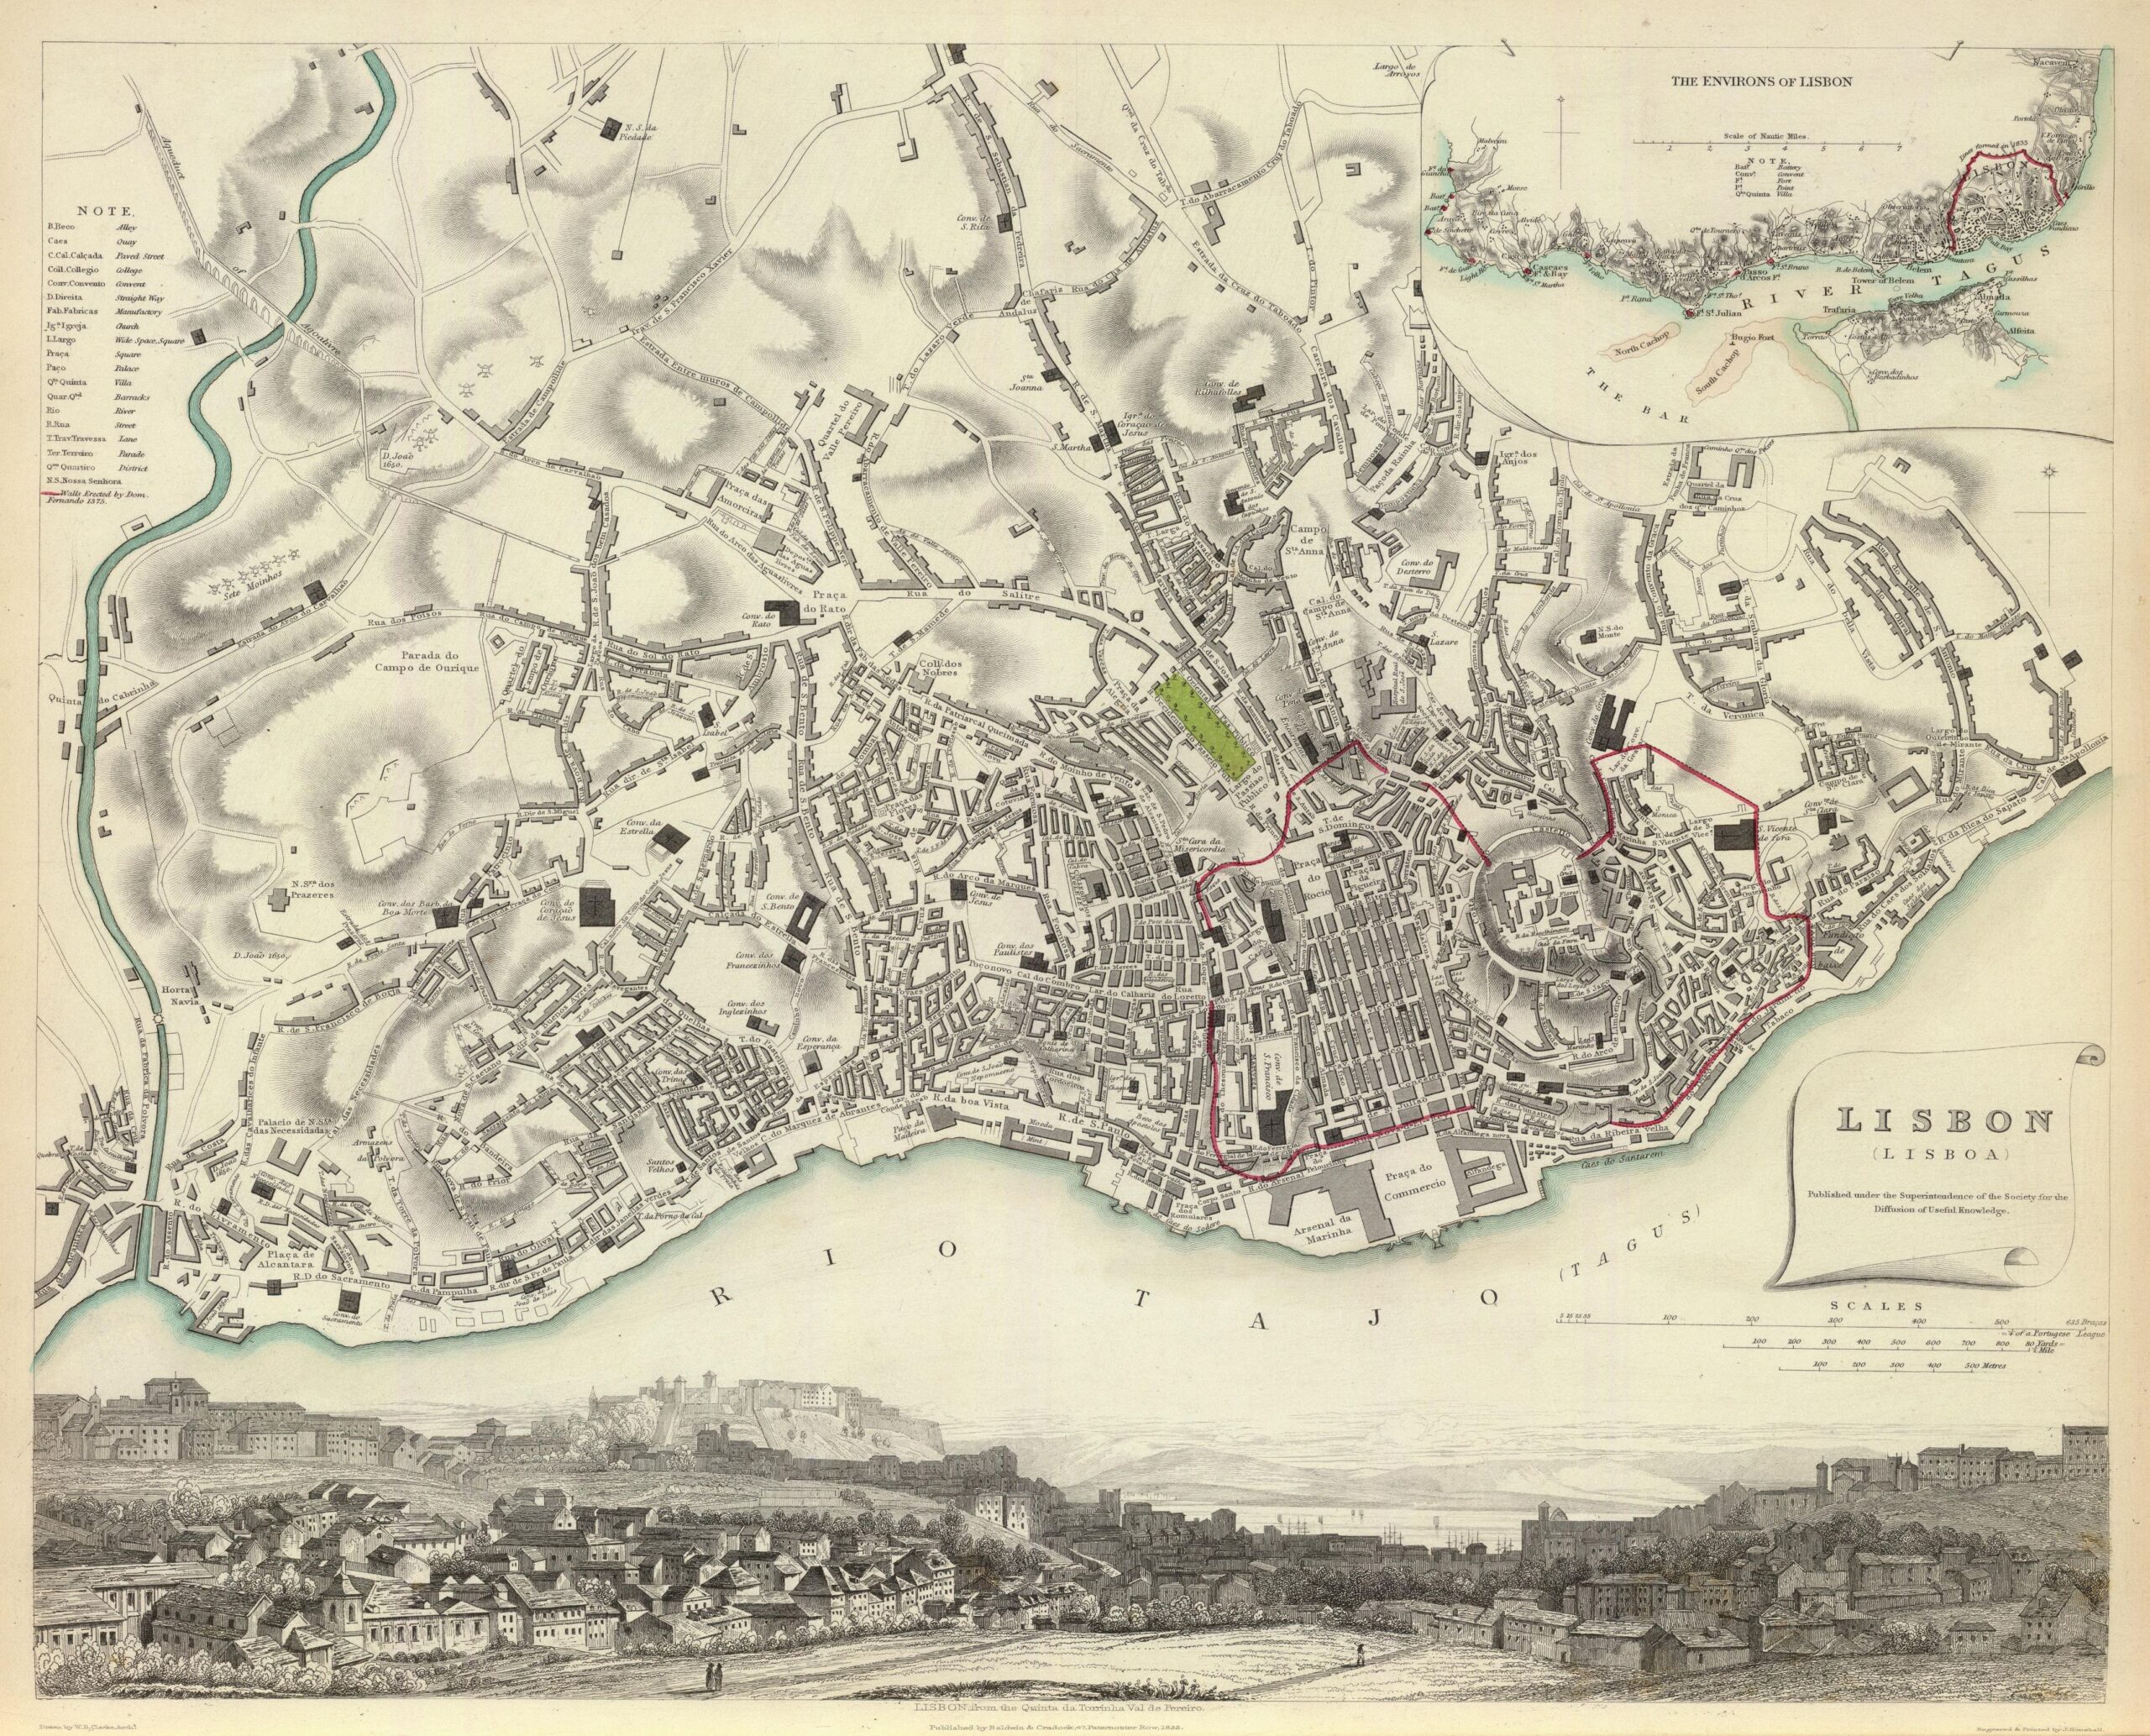 Plano de Lisboa (1833)